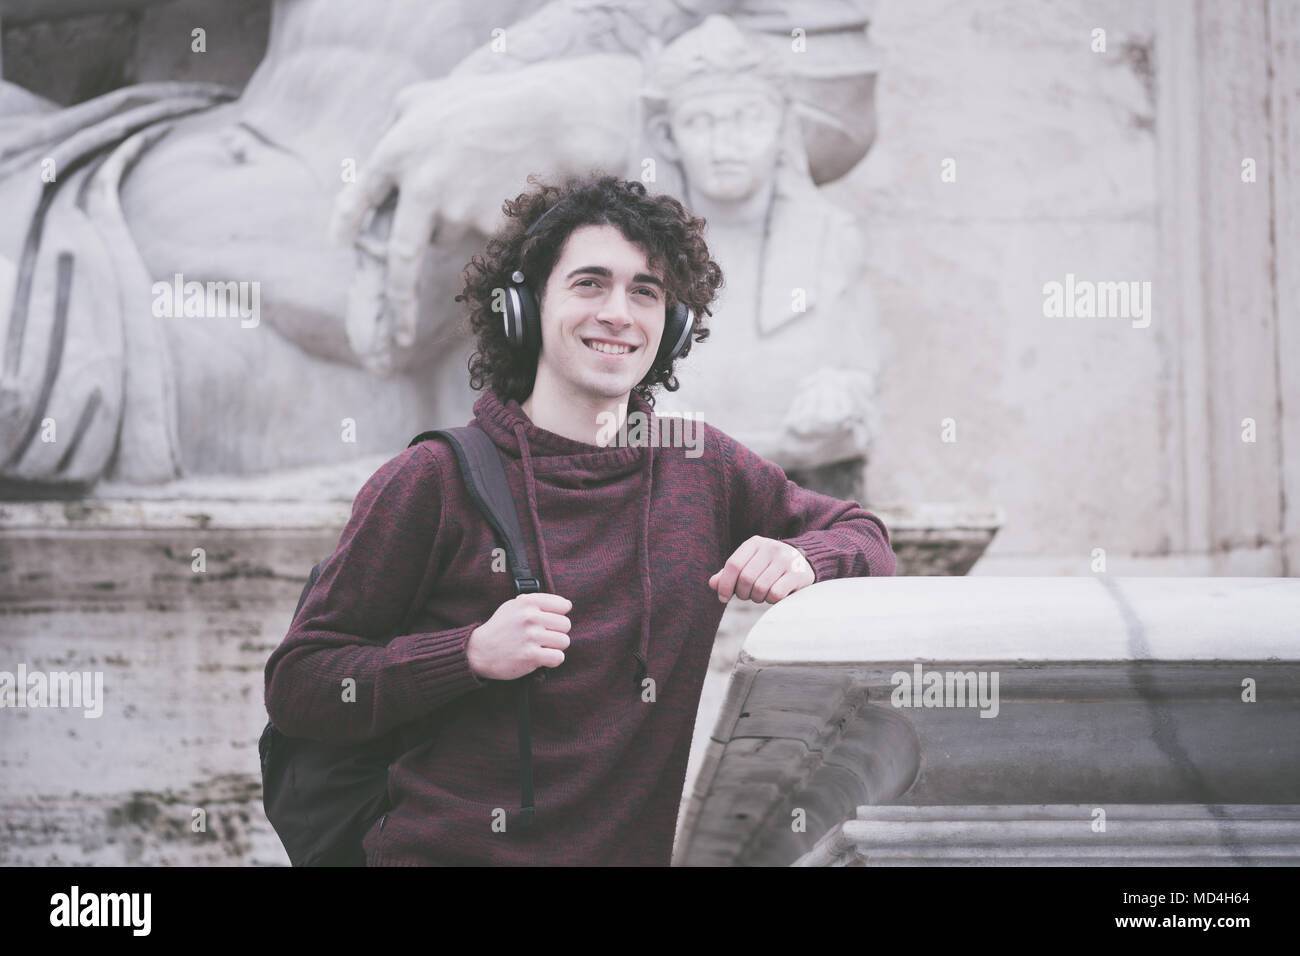 Jahrgang suche Bild von gutaussehenden jungen Mann mit lockigem Haar und Kopfhörern auf dem Kopf hören die Musik Stockfoto